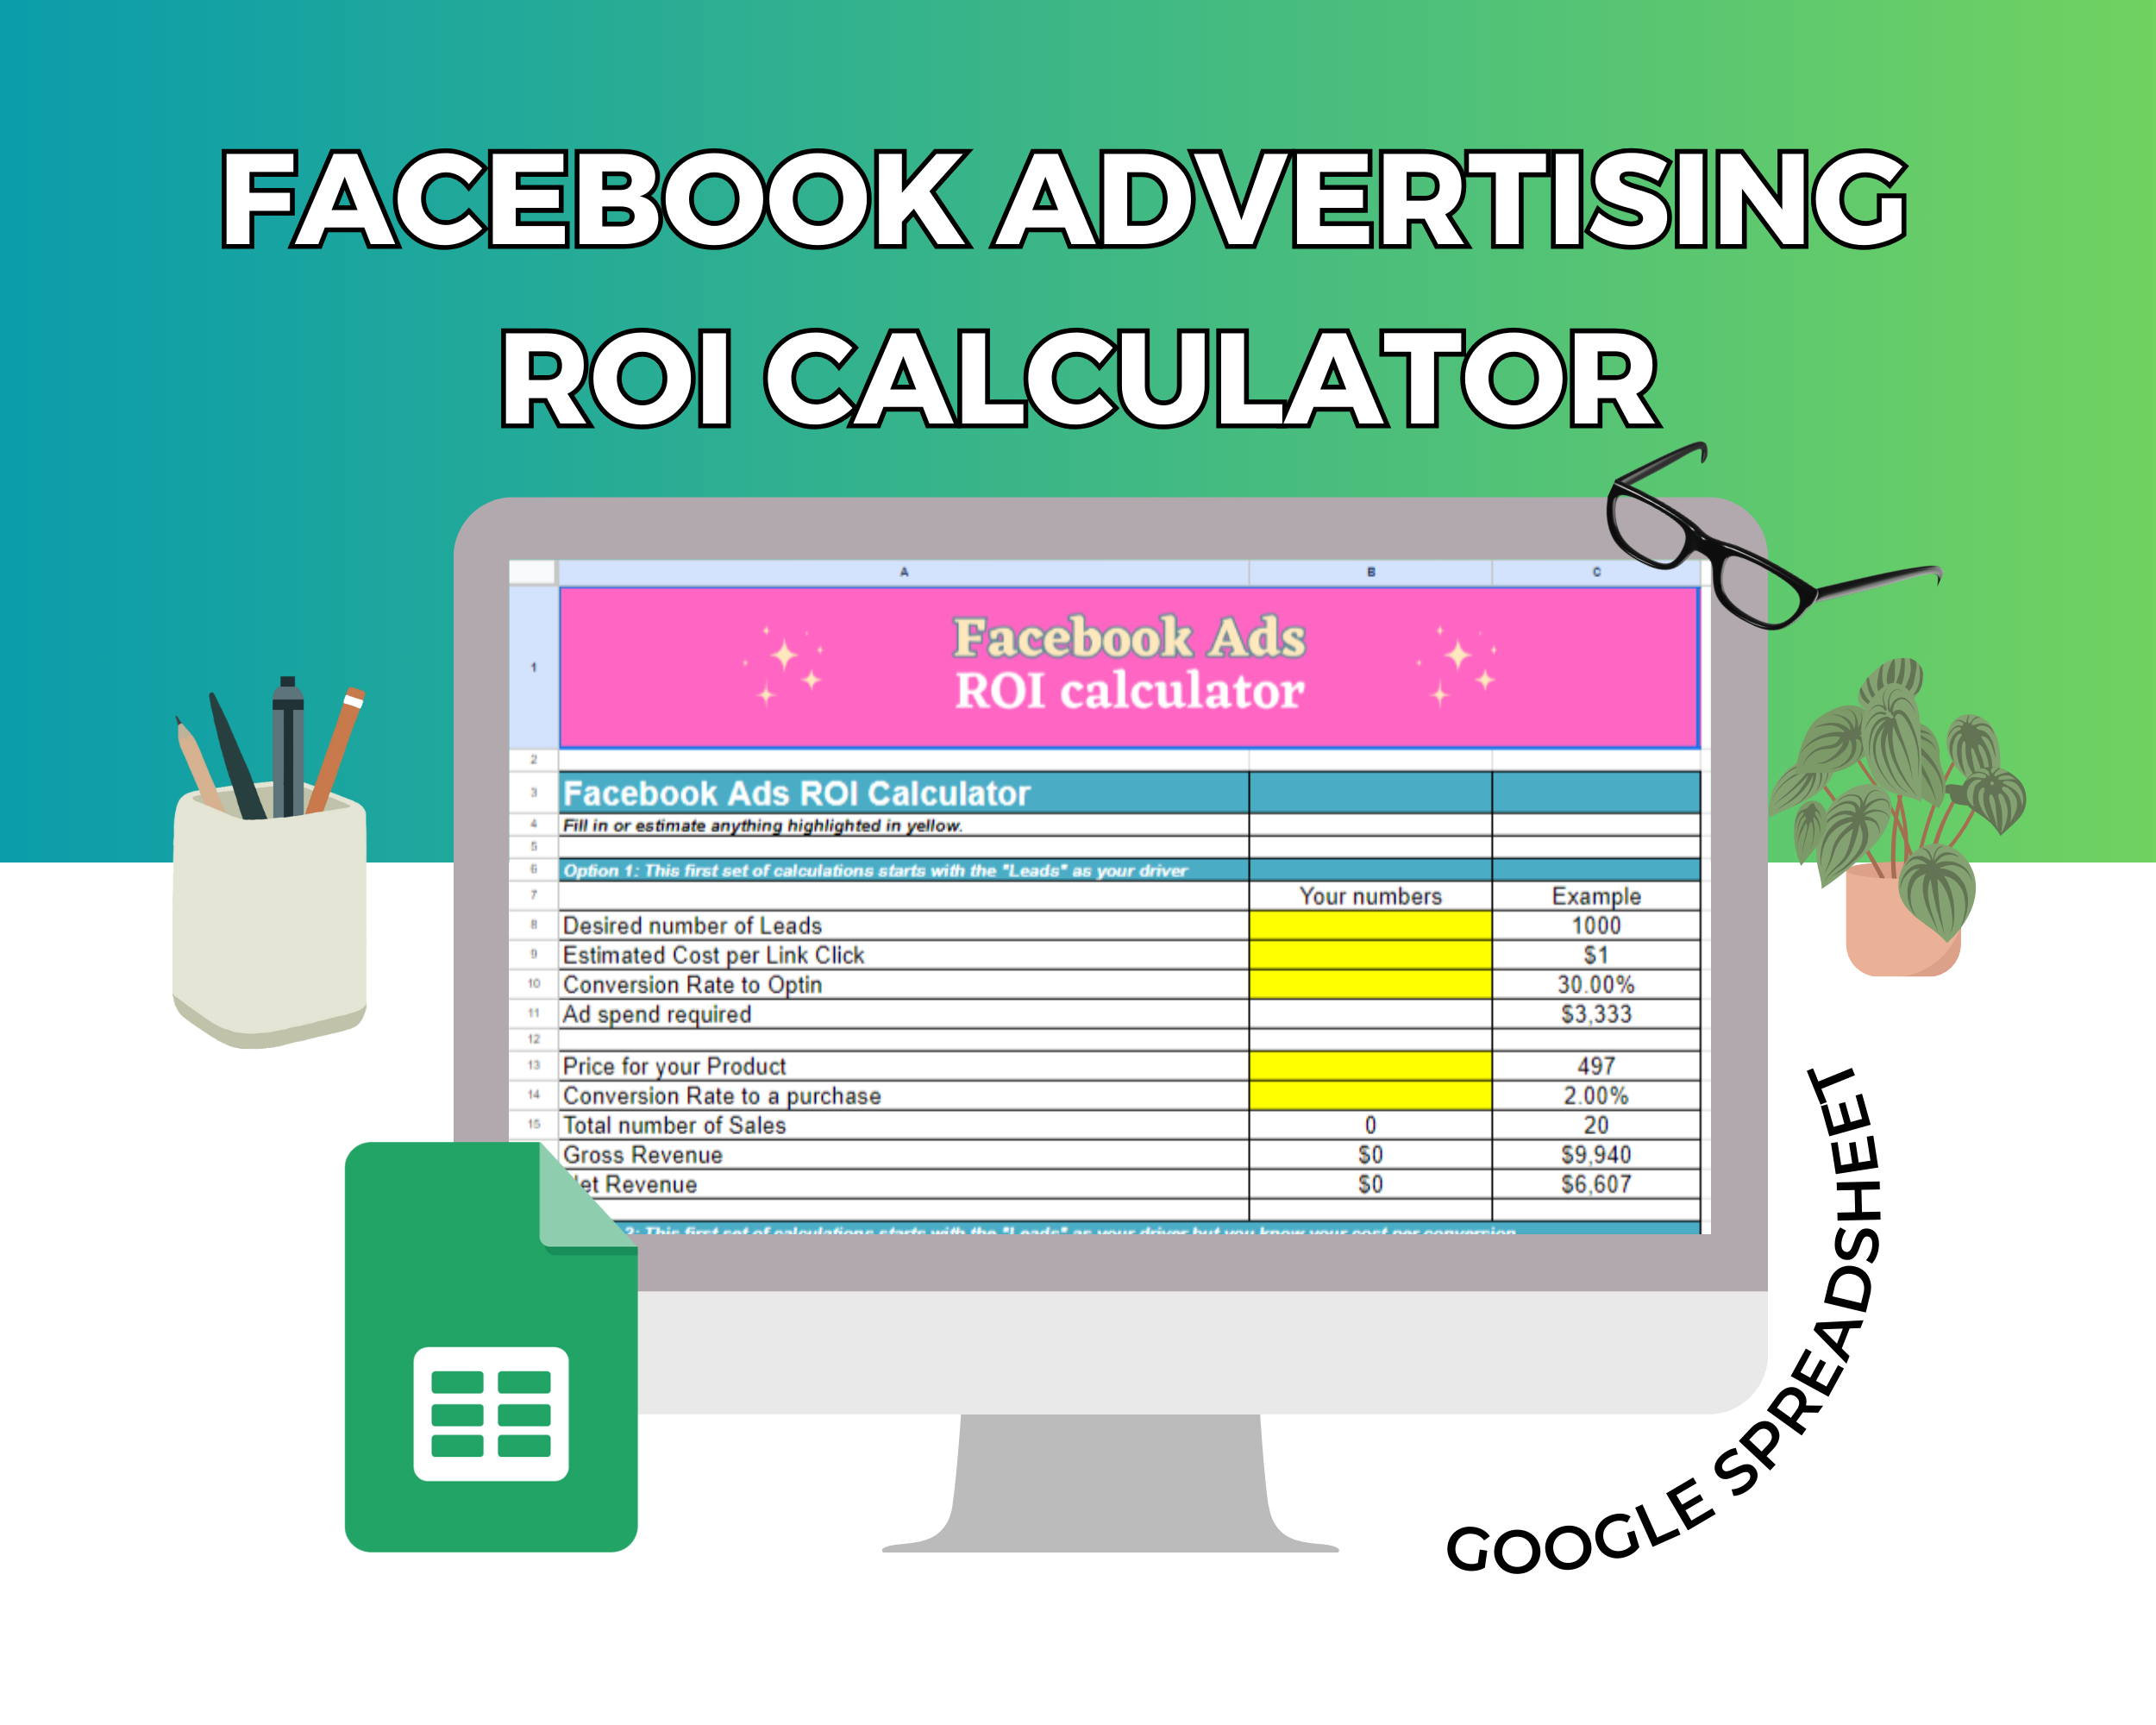 Facebook Advertising ROI Calculator  Google Spreadsheet | Simple Facebook Advertising ROI Calculator  Google Sheets